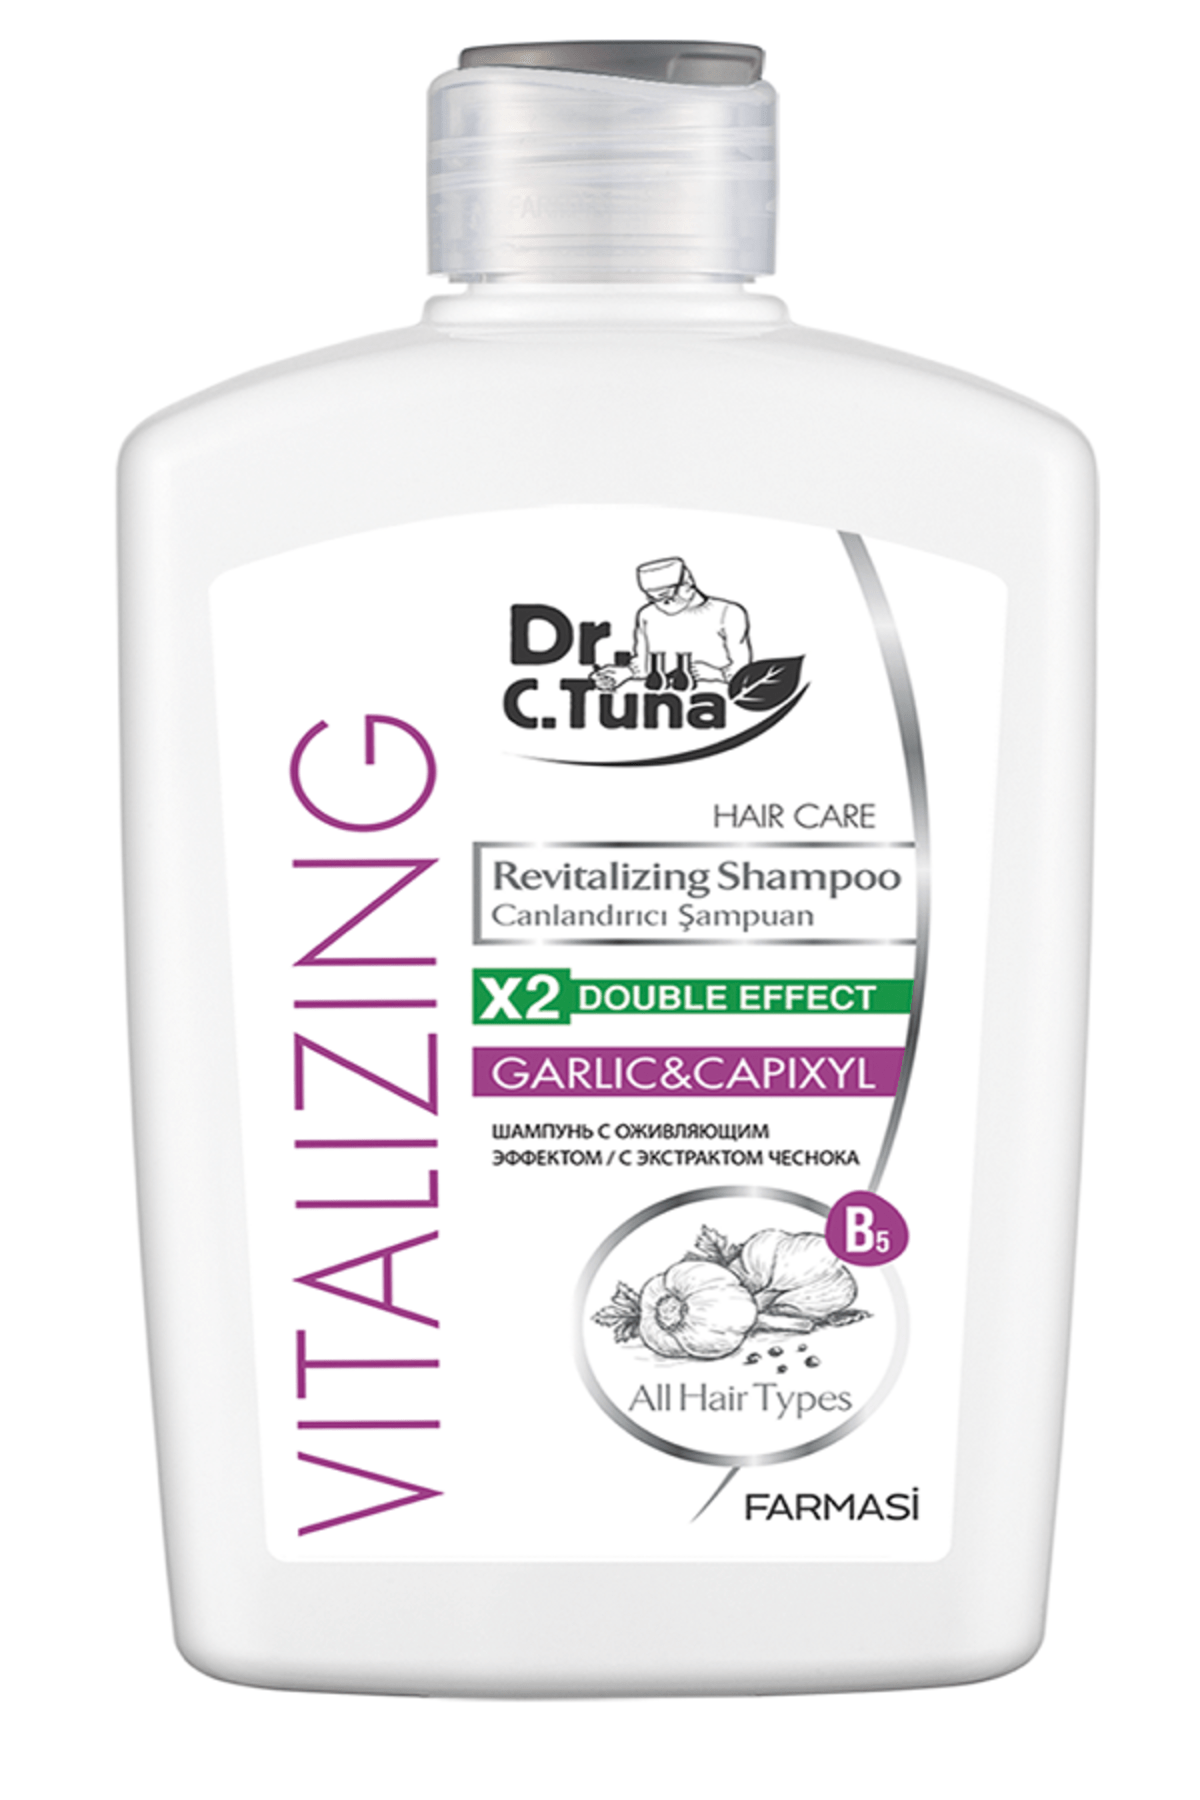 Farmasi DR. C. TUNA Vitalizing Tüm Saçlar için Canlandırıcı Sarımsaklı Şampuan-500 ml